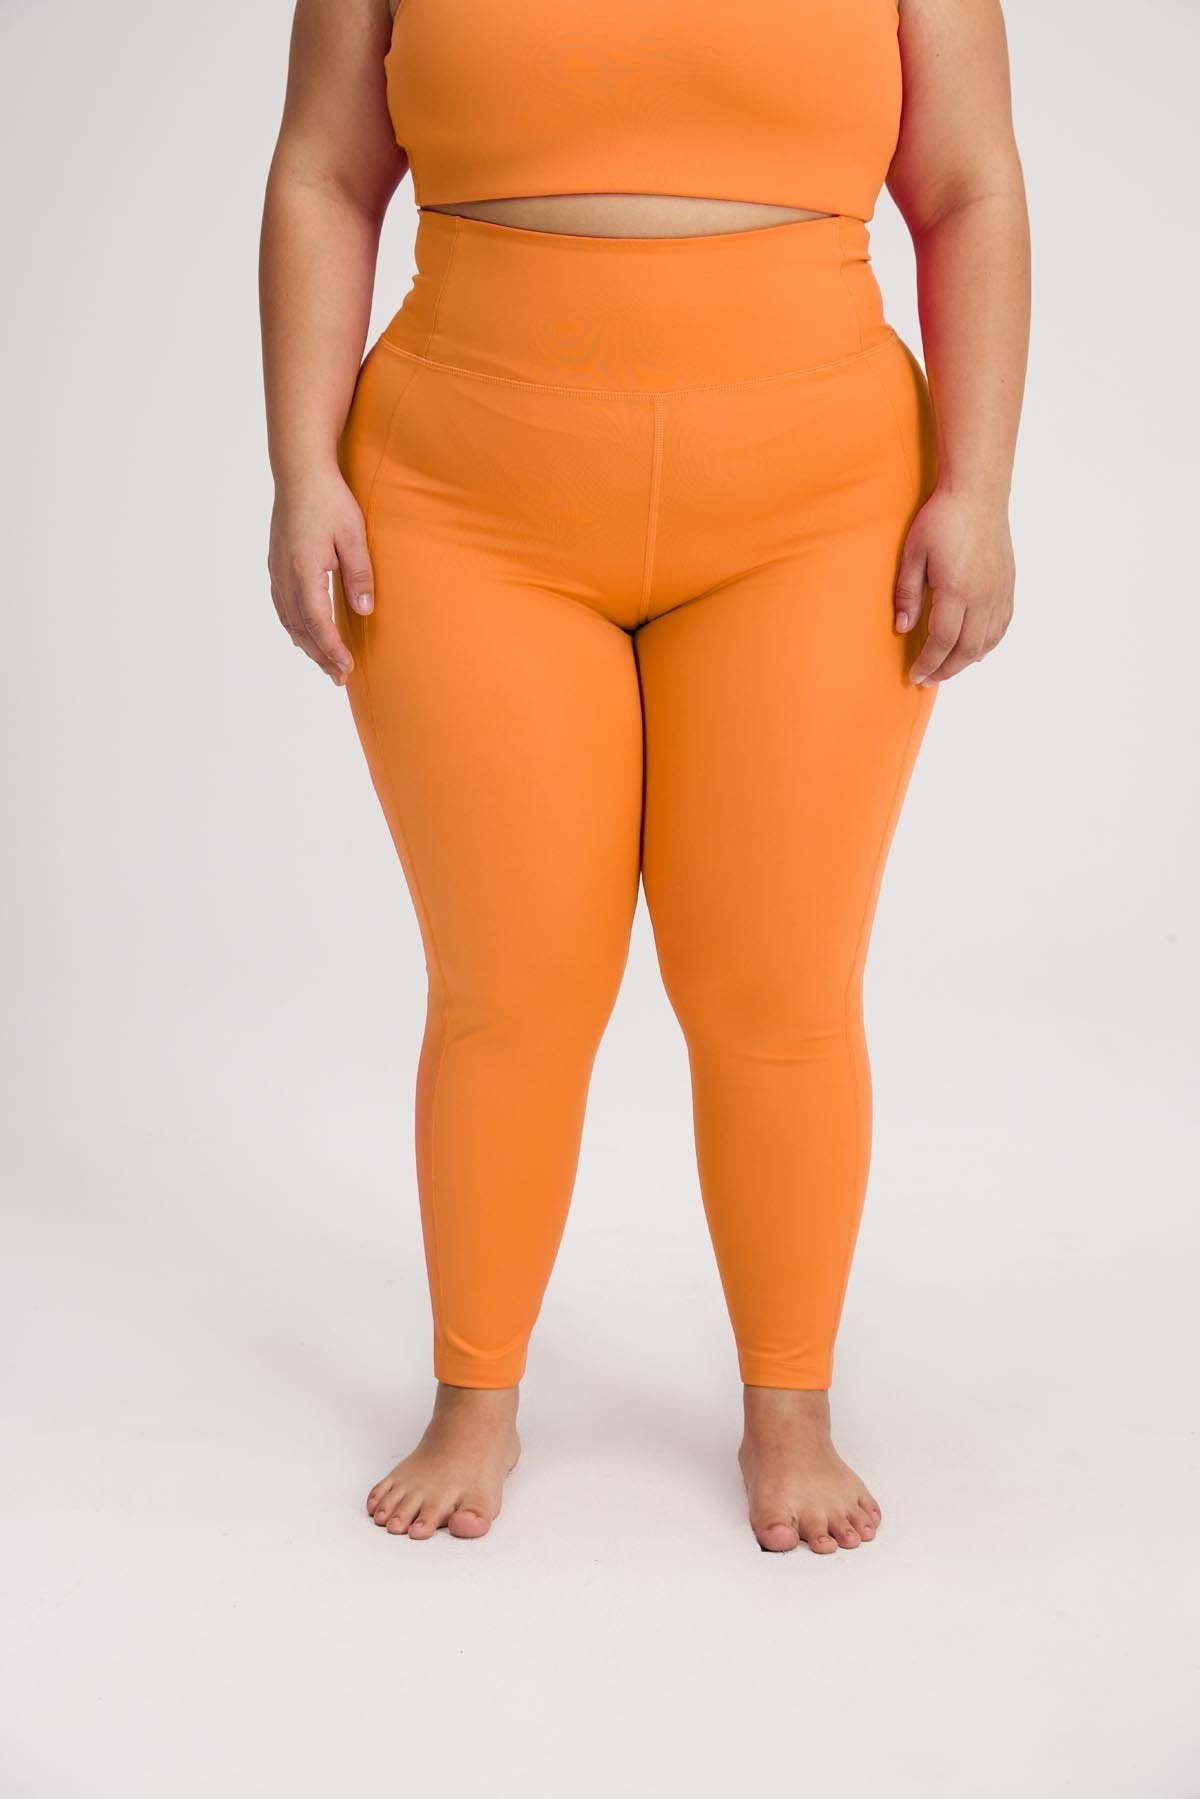 Lineup High-Waist Pocket Legging in Orange | SAVAGE X FENTY